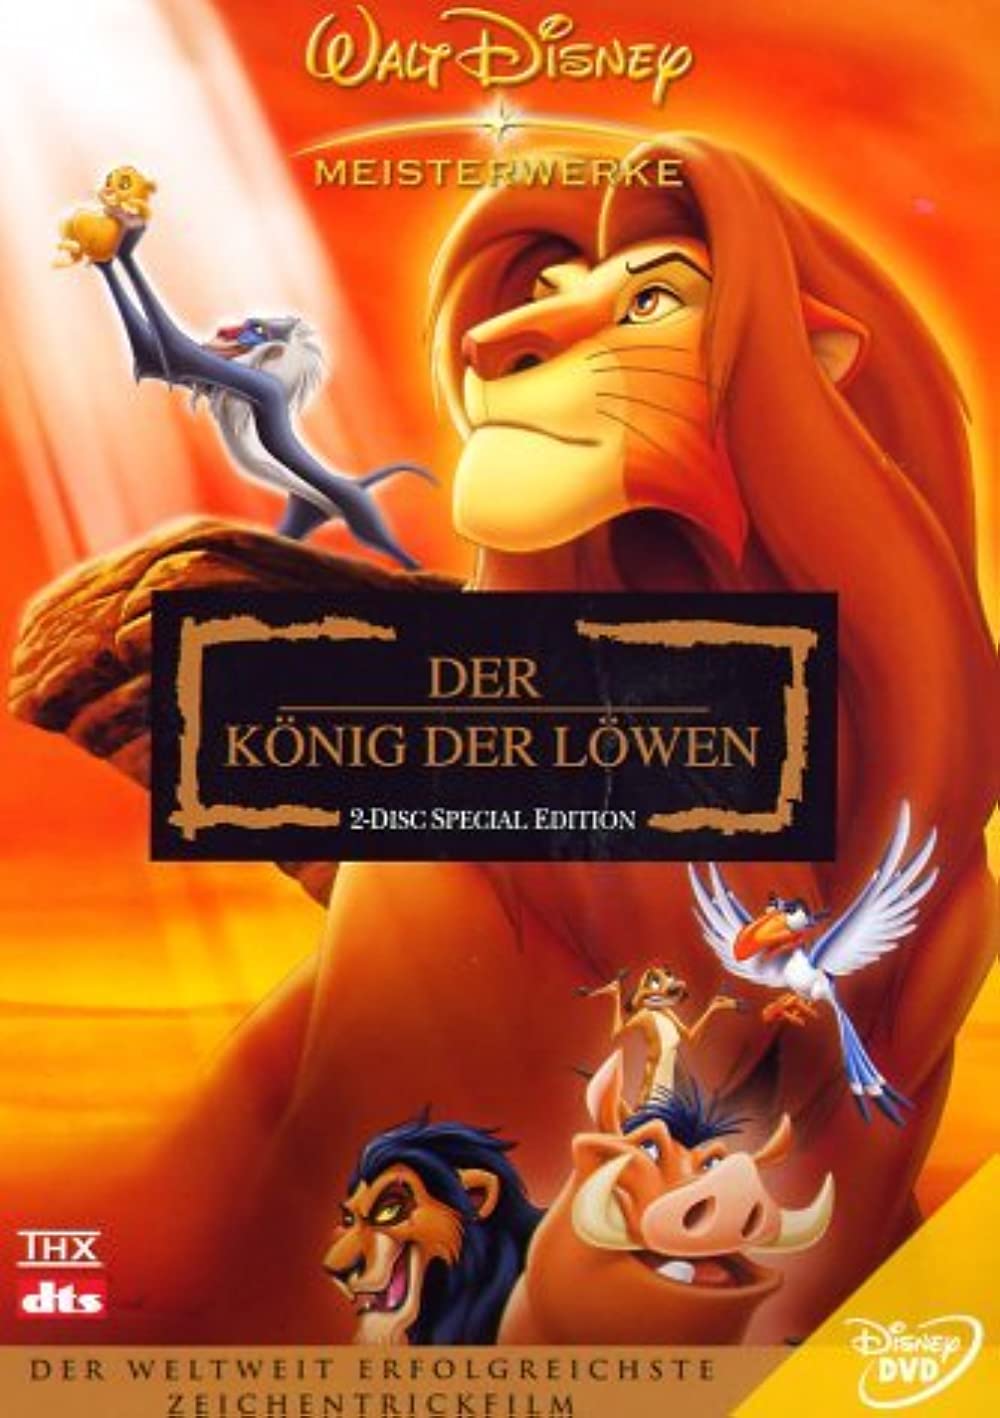 Filmbeschreibung zu Der König der Löwen (1994)